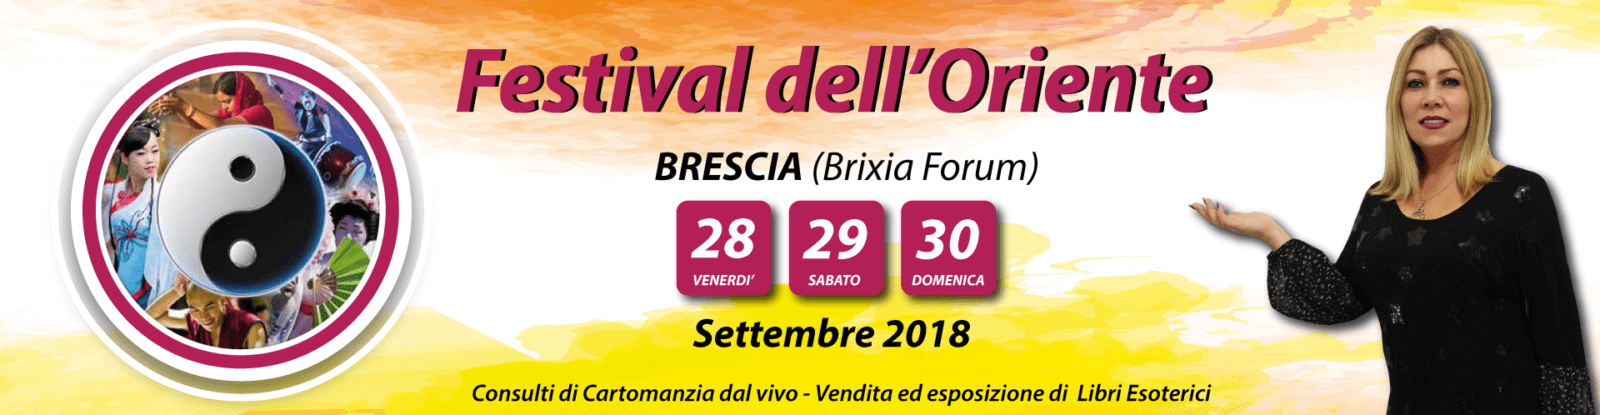 Festival dell'Oriente a Brescia